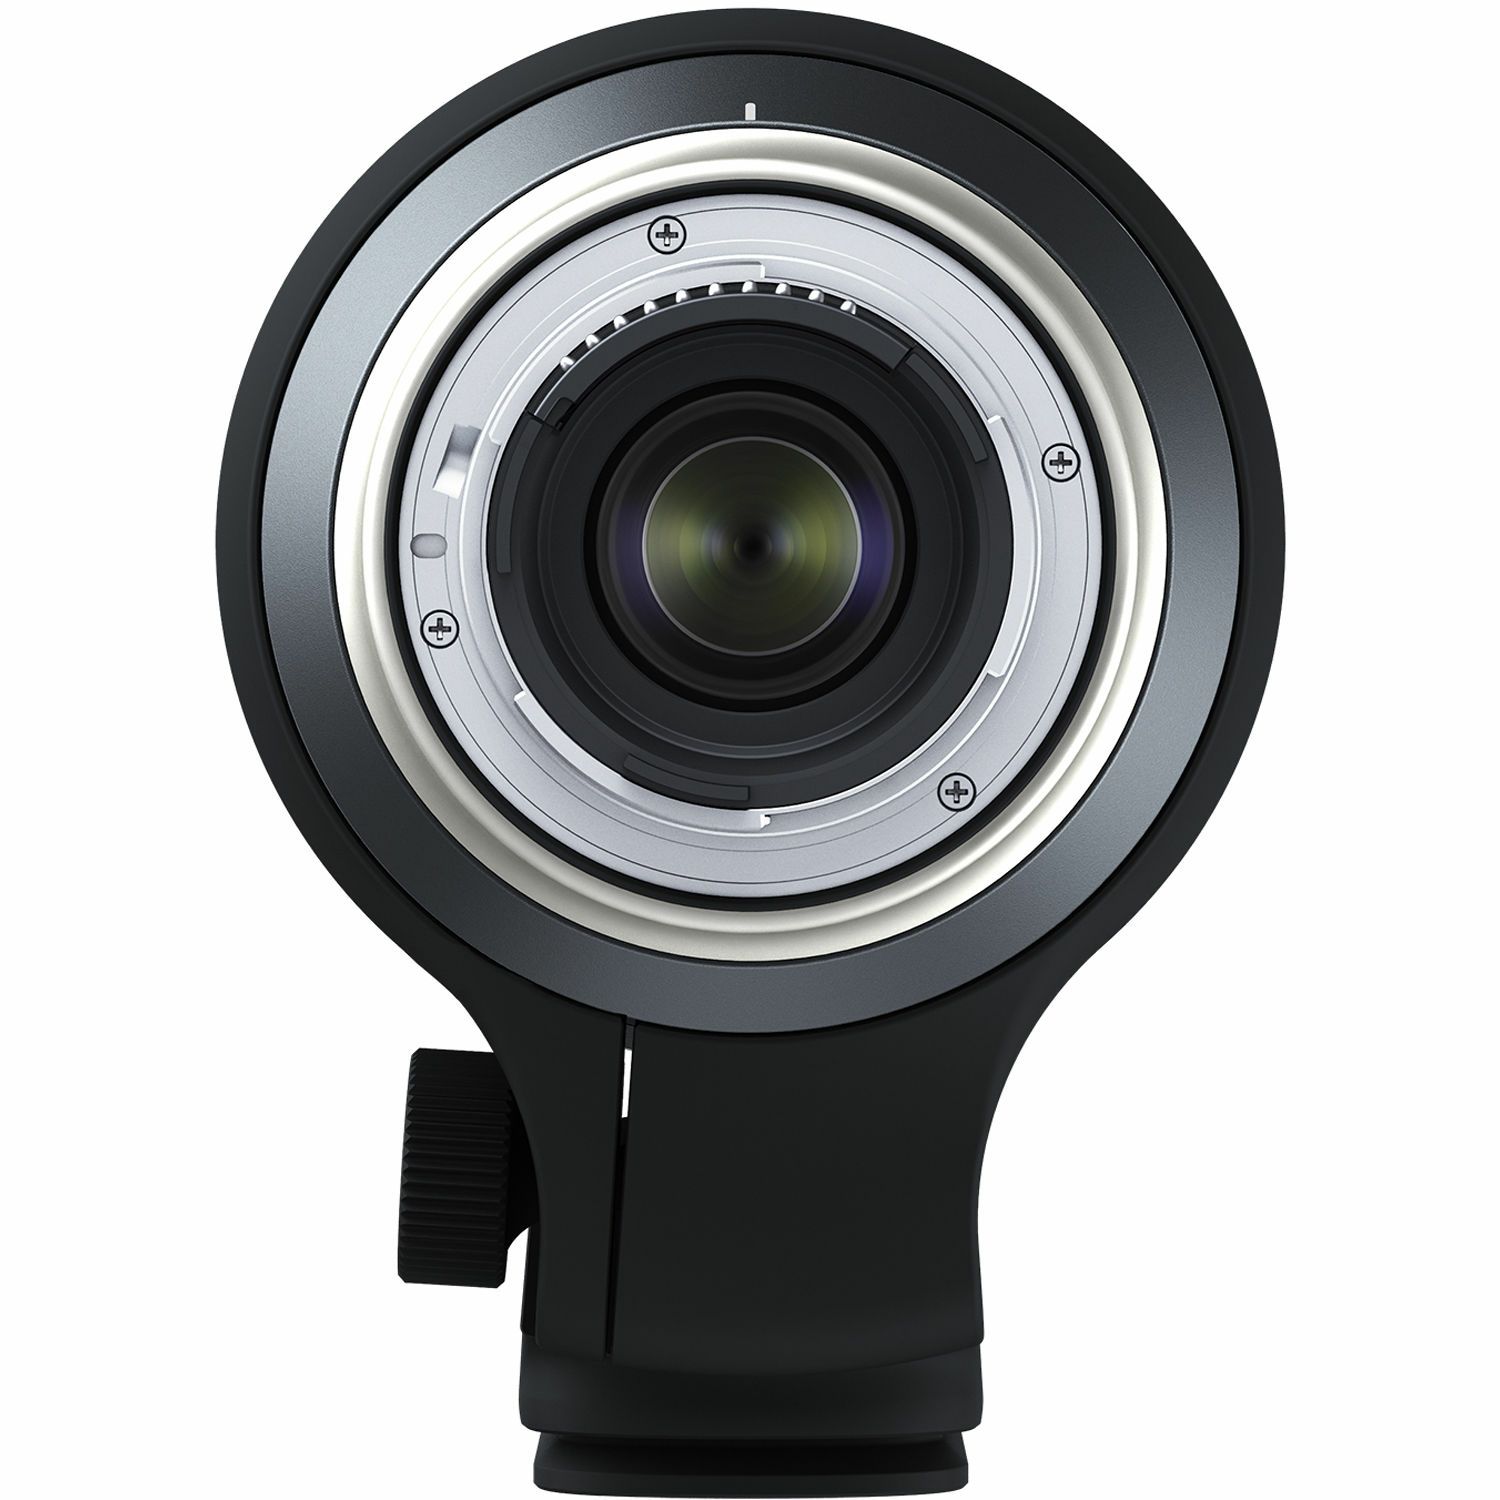 Tamron SP AF 150-600mm f/5-6.3 Di VC USD G2 telefoto objektiv za Canon EF (A022E)